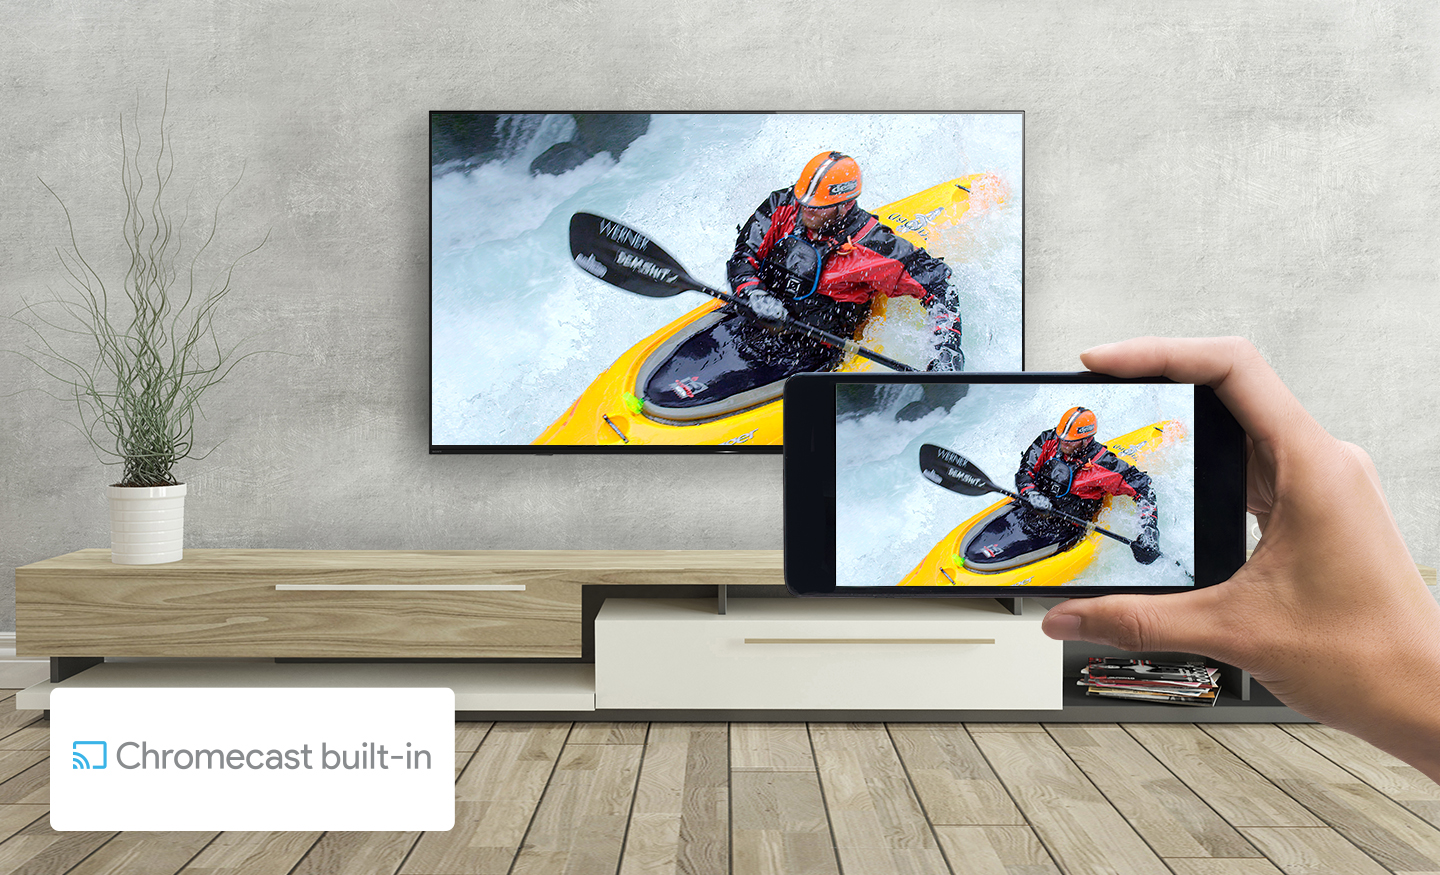 Sony 65” Class X77L 4K Ultra HD LED Smart Google TV KD65X77L - 2023 Model 